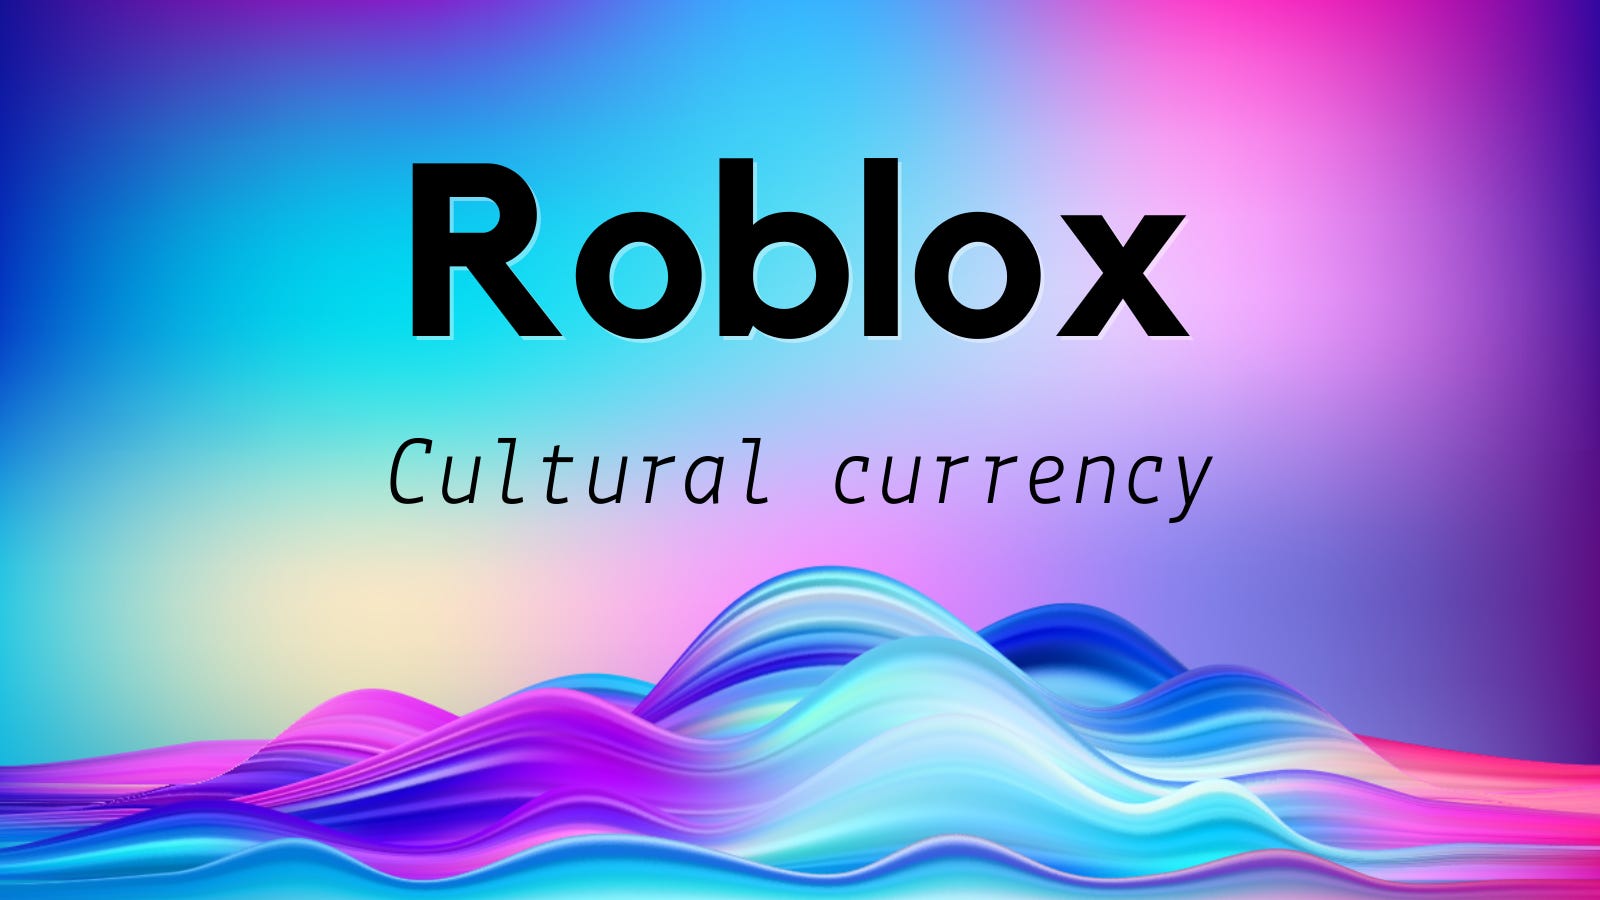 1) Profile - Roblox  Roblox creator, Roblox, Roblox funny